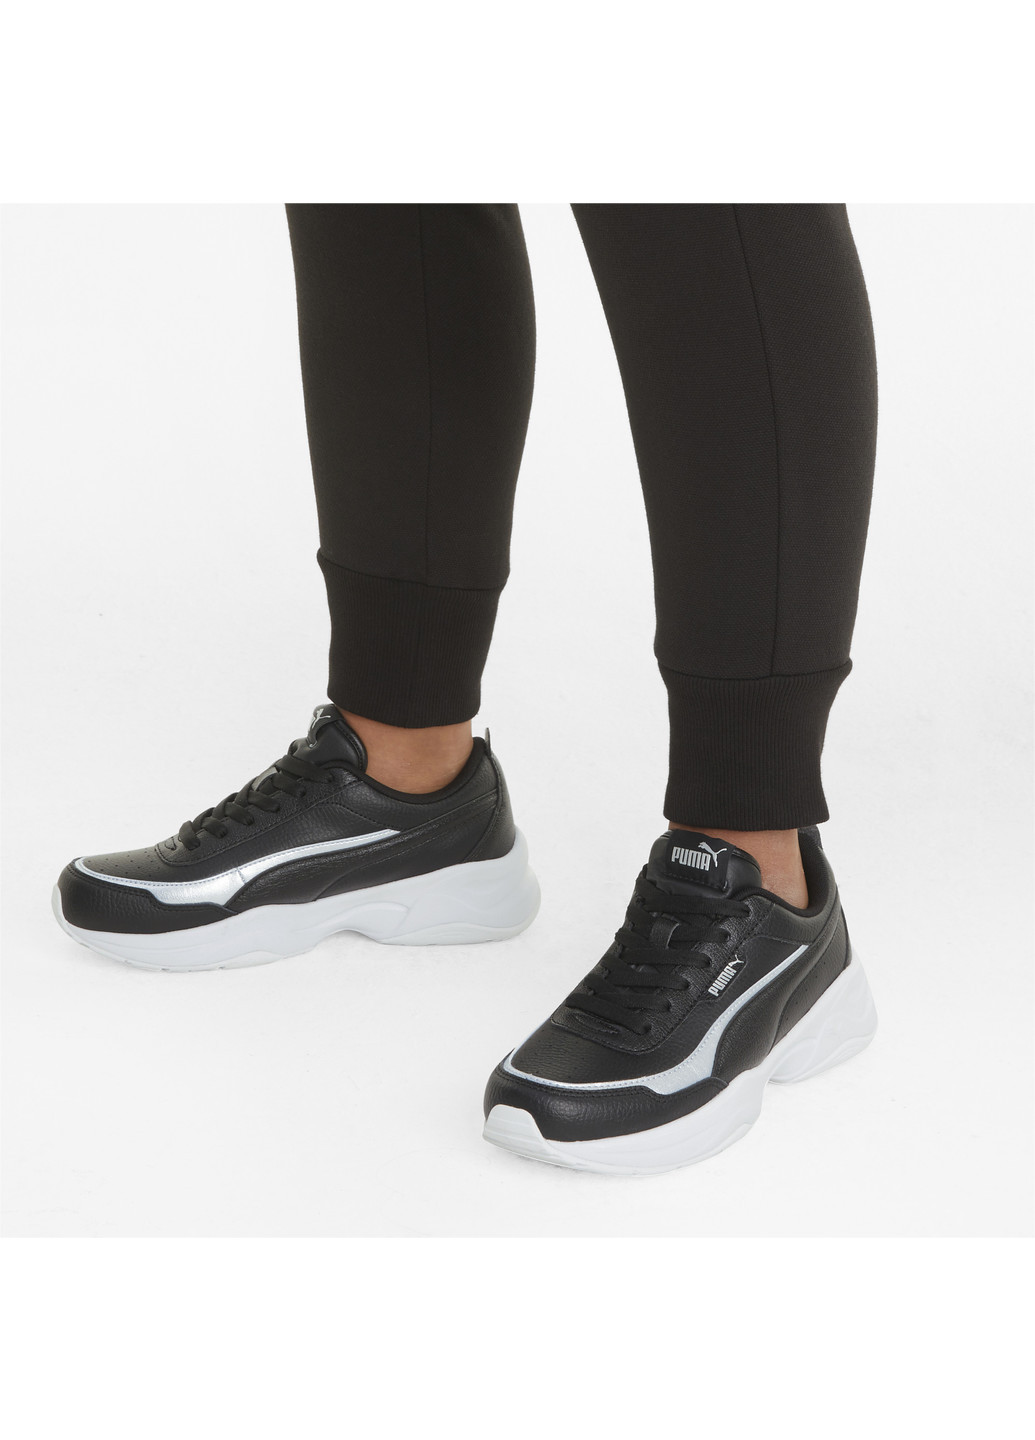 Черные всесезонные кроссовки cilia mode lux women's trainers Puma